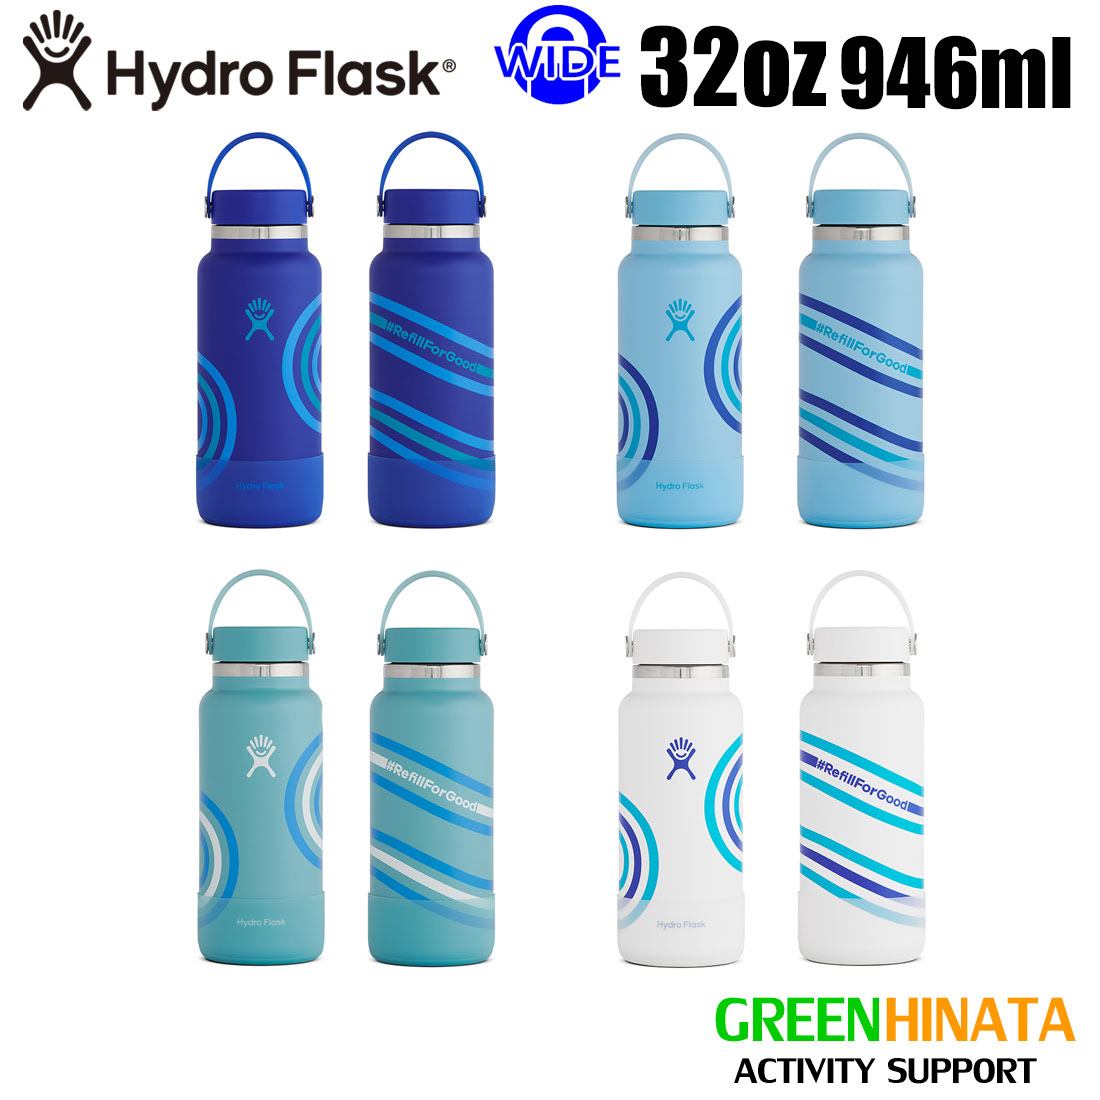  ハイドロフラスク ワイドマウス32oz リフィル Refill 保温 保冷 ボトル 水筒 HydroFlask REFILL FOR GOOD 32oz